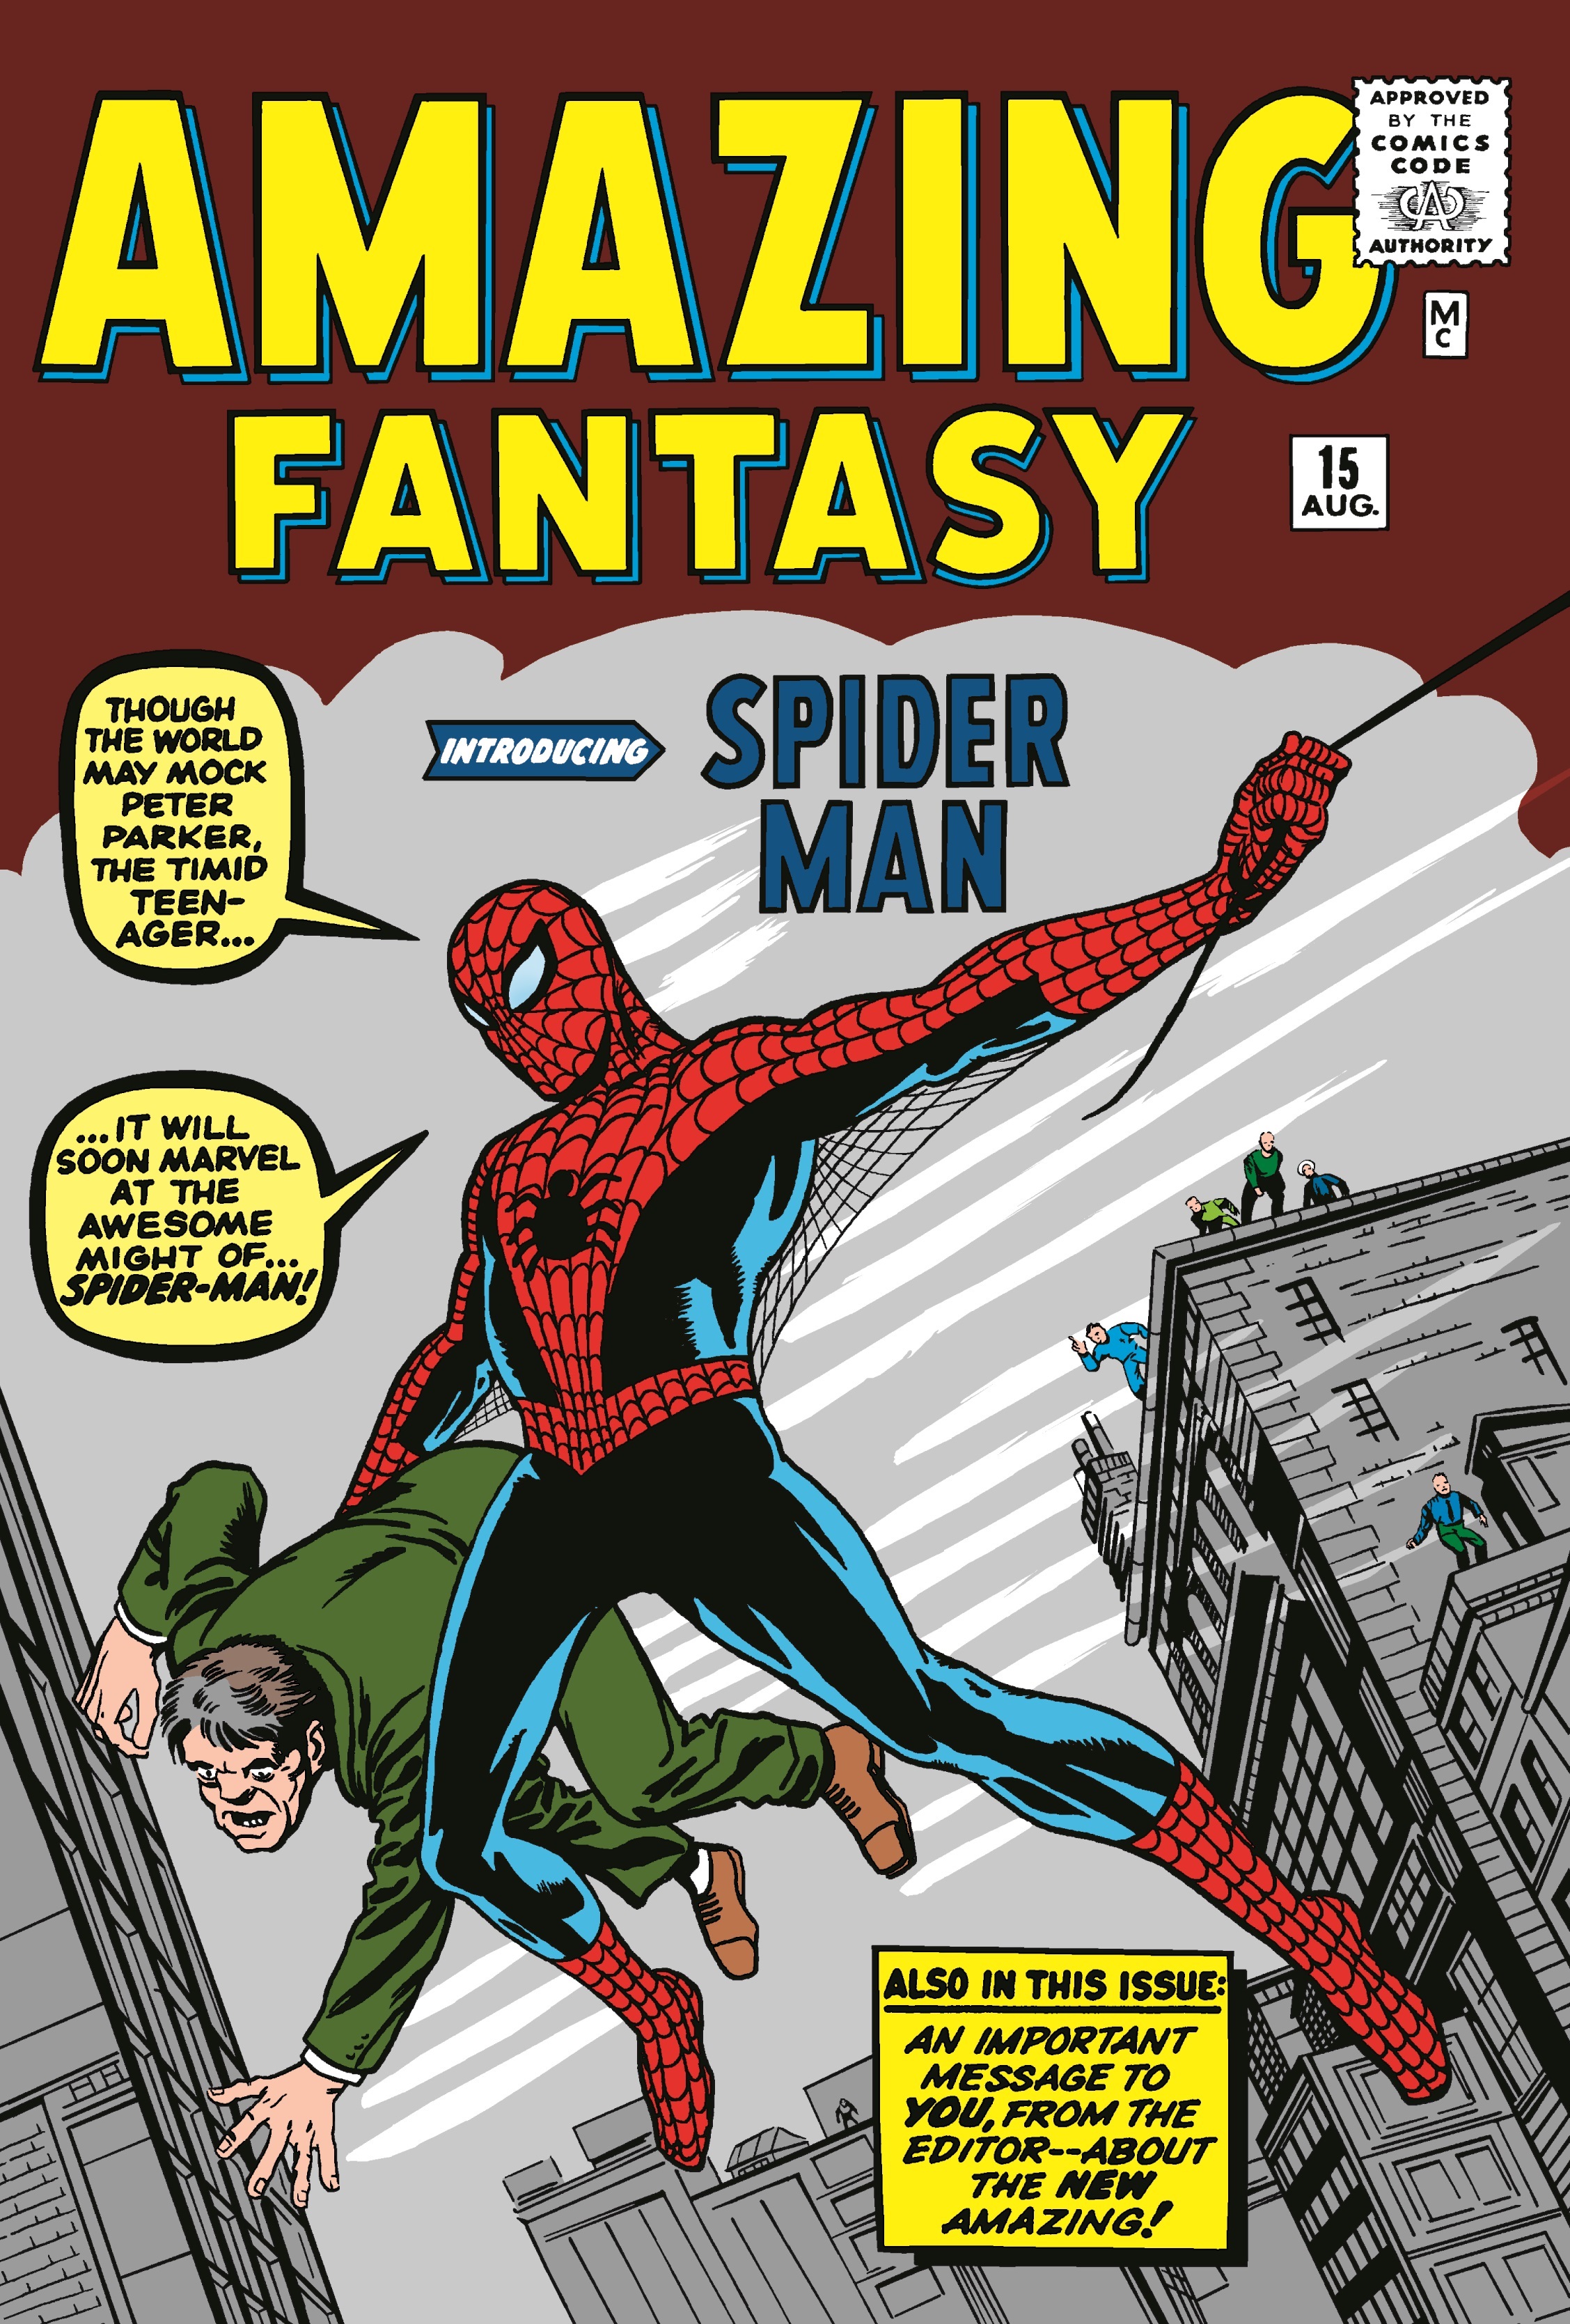 Livro com primeiras histórias do Homem-Aranha será lançado em janeiro